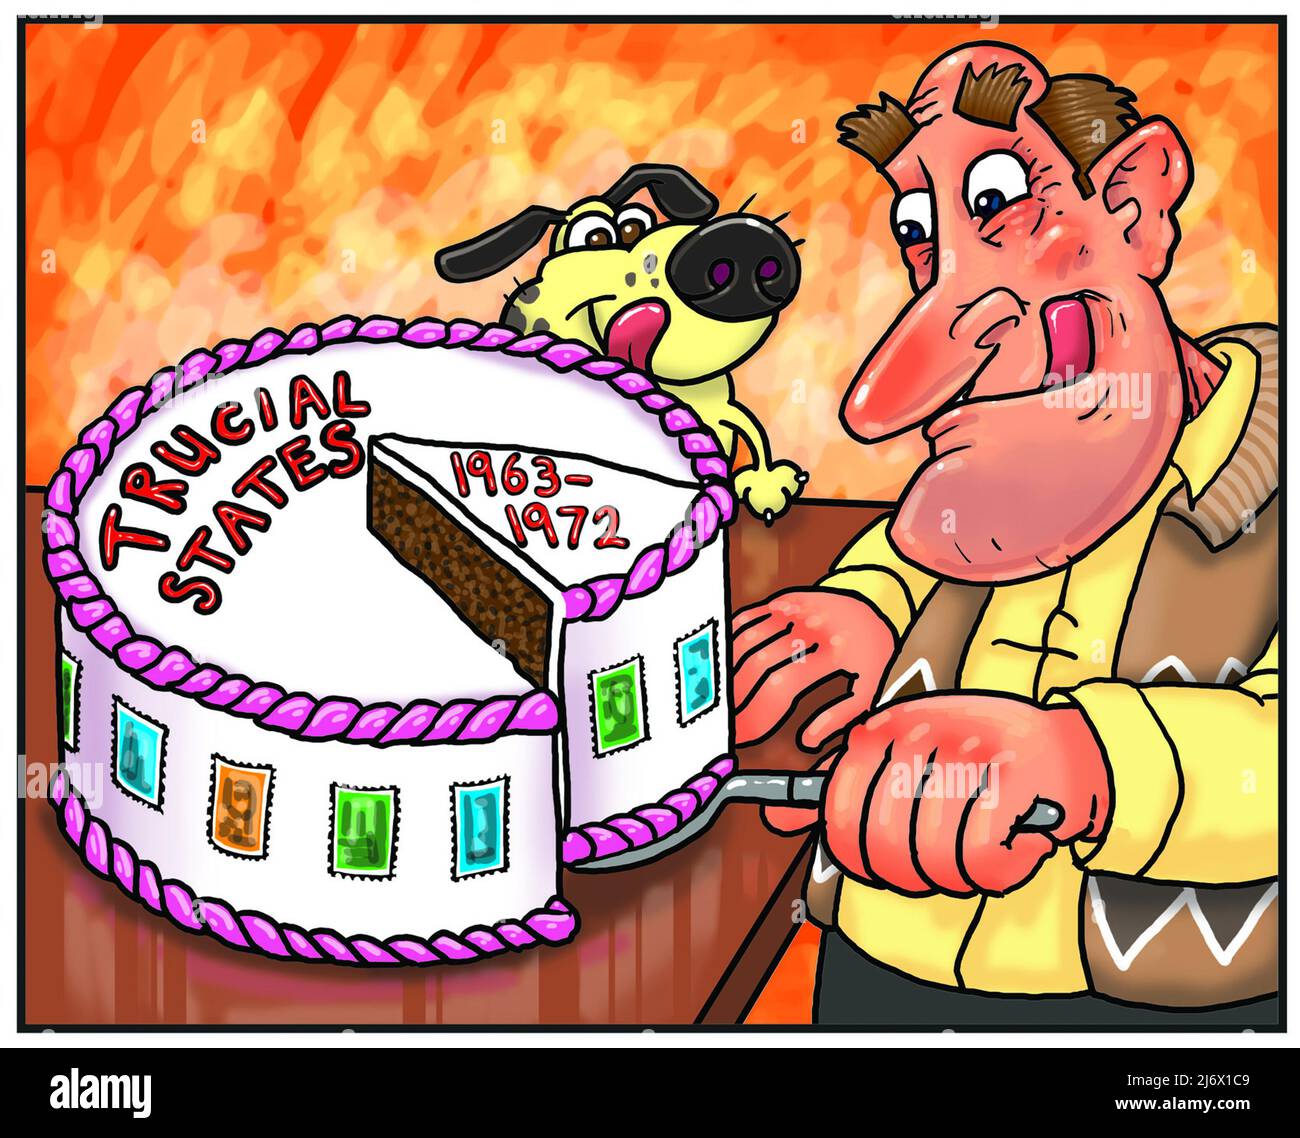 Drôle de dessin animé art de l'homme trancher un gâteau avec les mots Trucial States 1963-1972 illustrant l'appel des États Trucial timbre collectant philatélie Banque D'Images